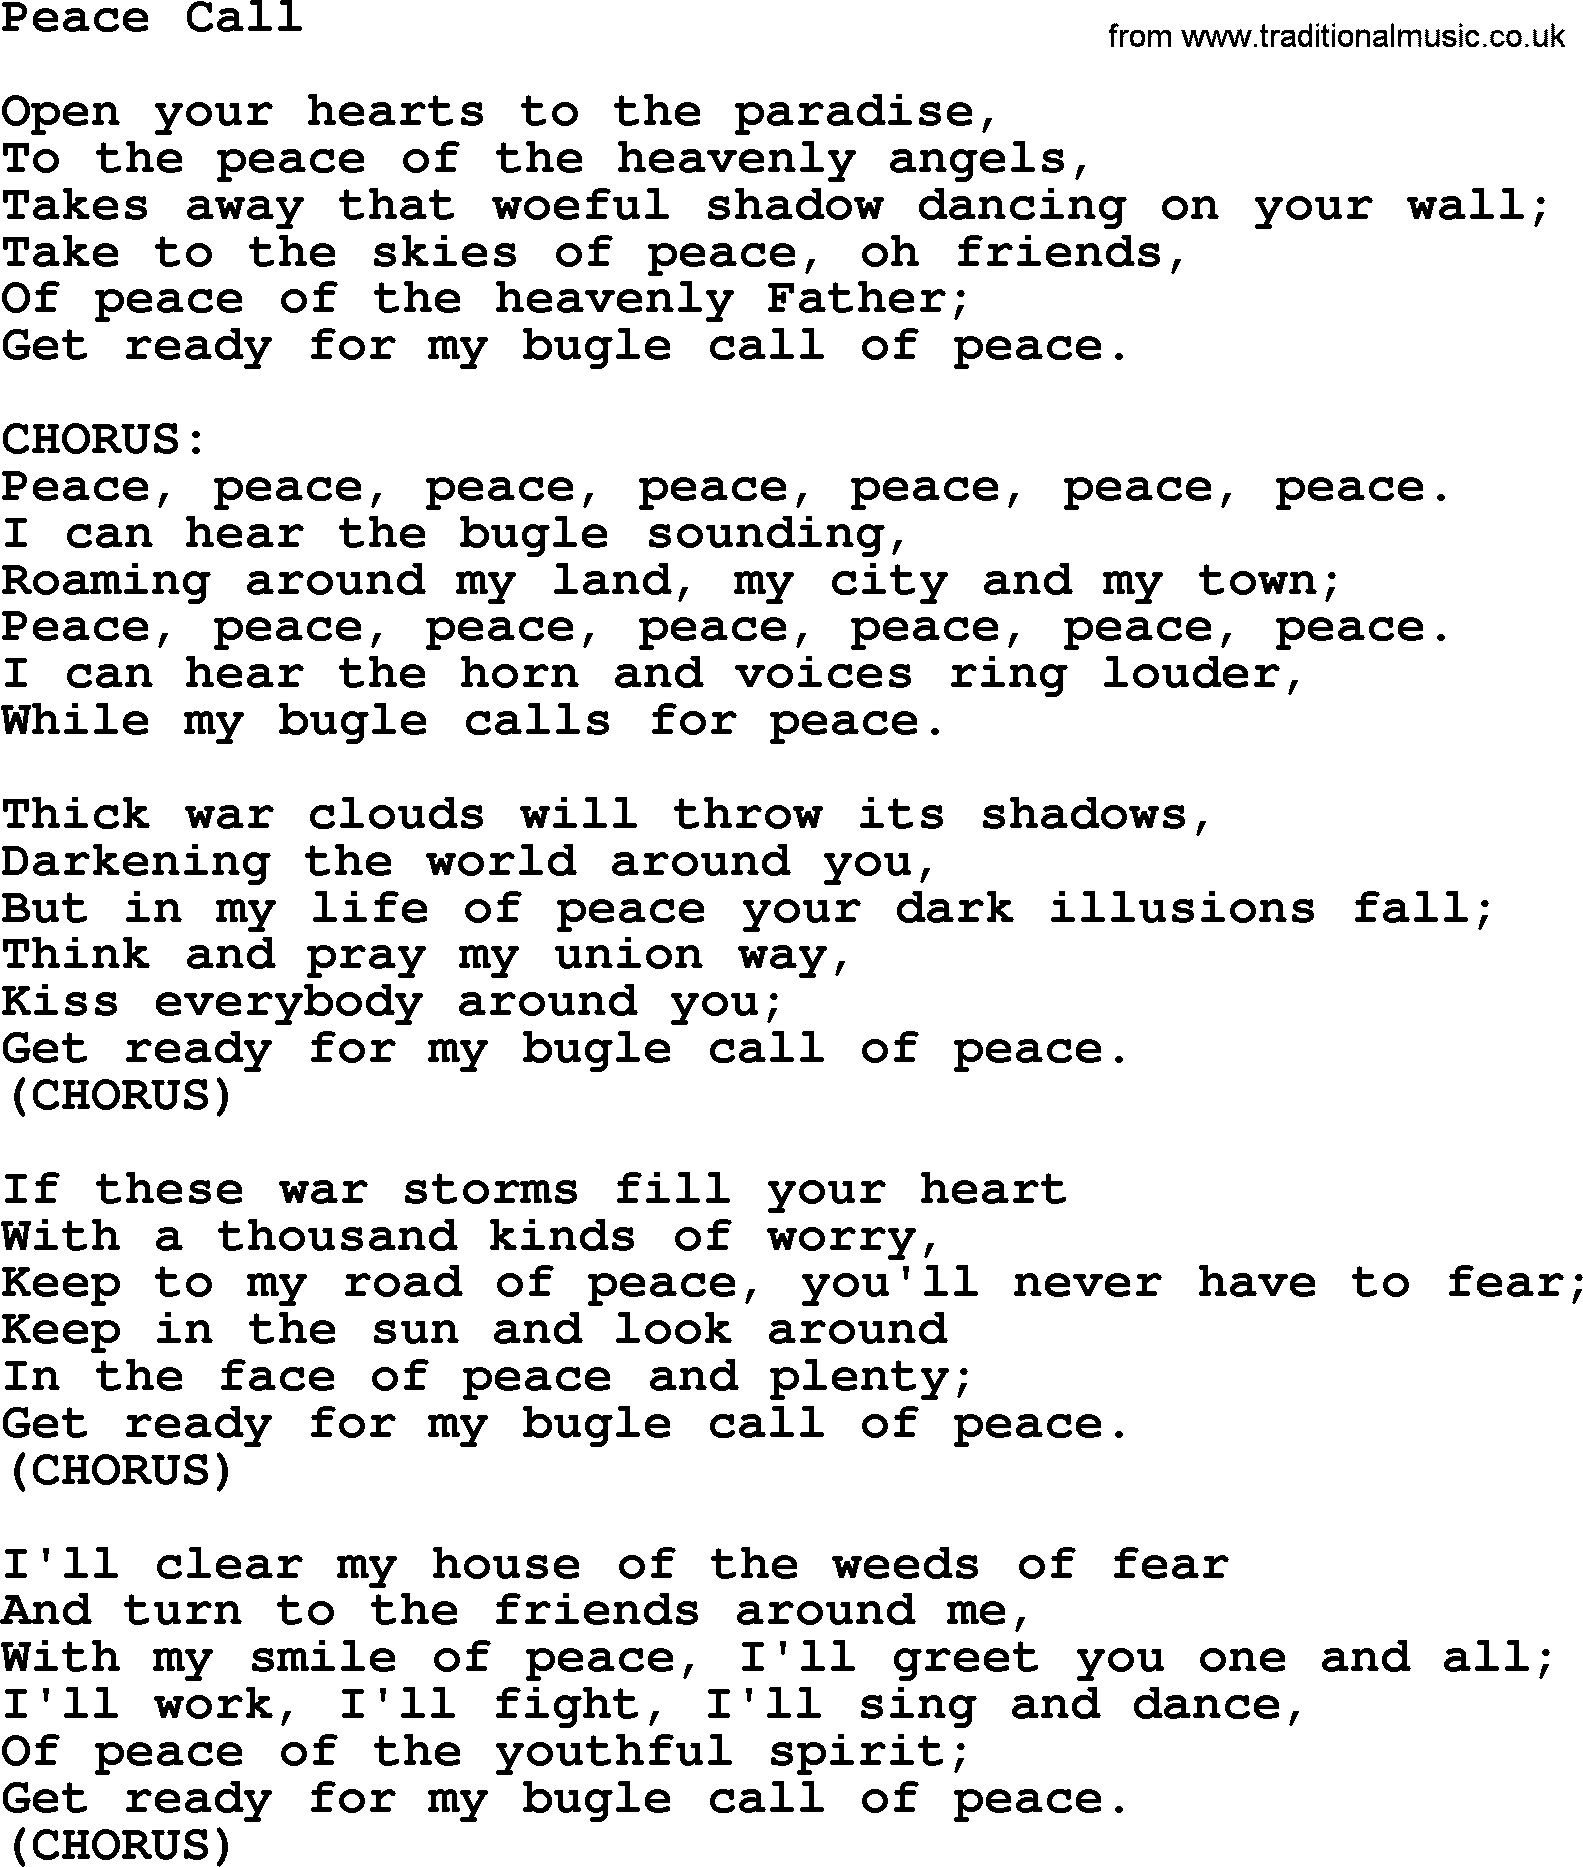 Woody Guthrie song Peace Call lyrics